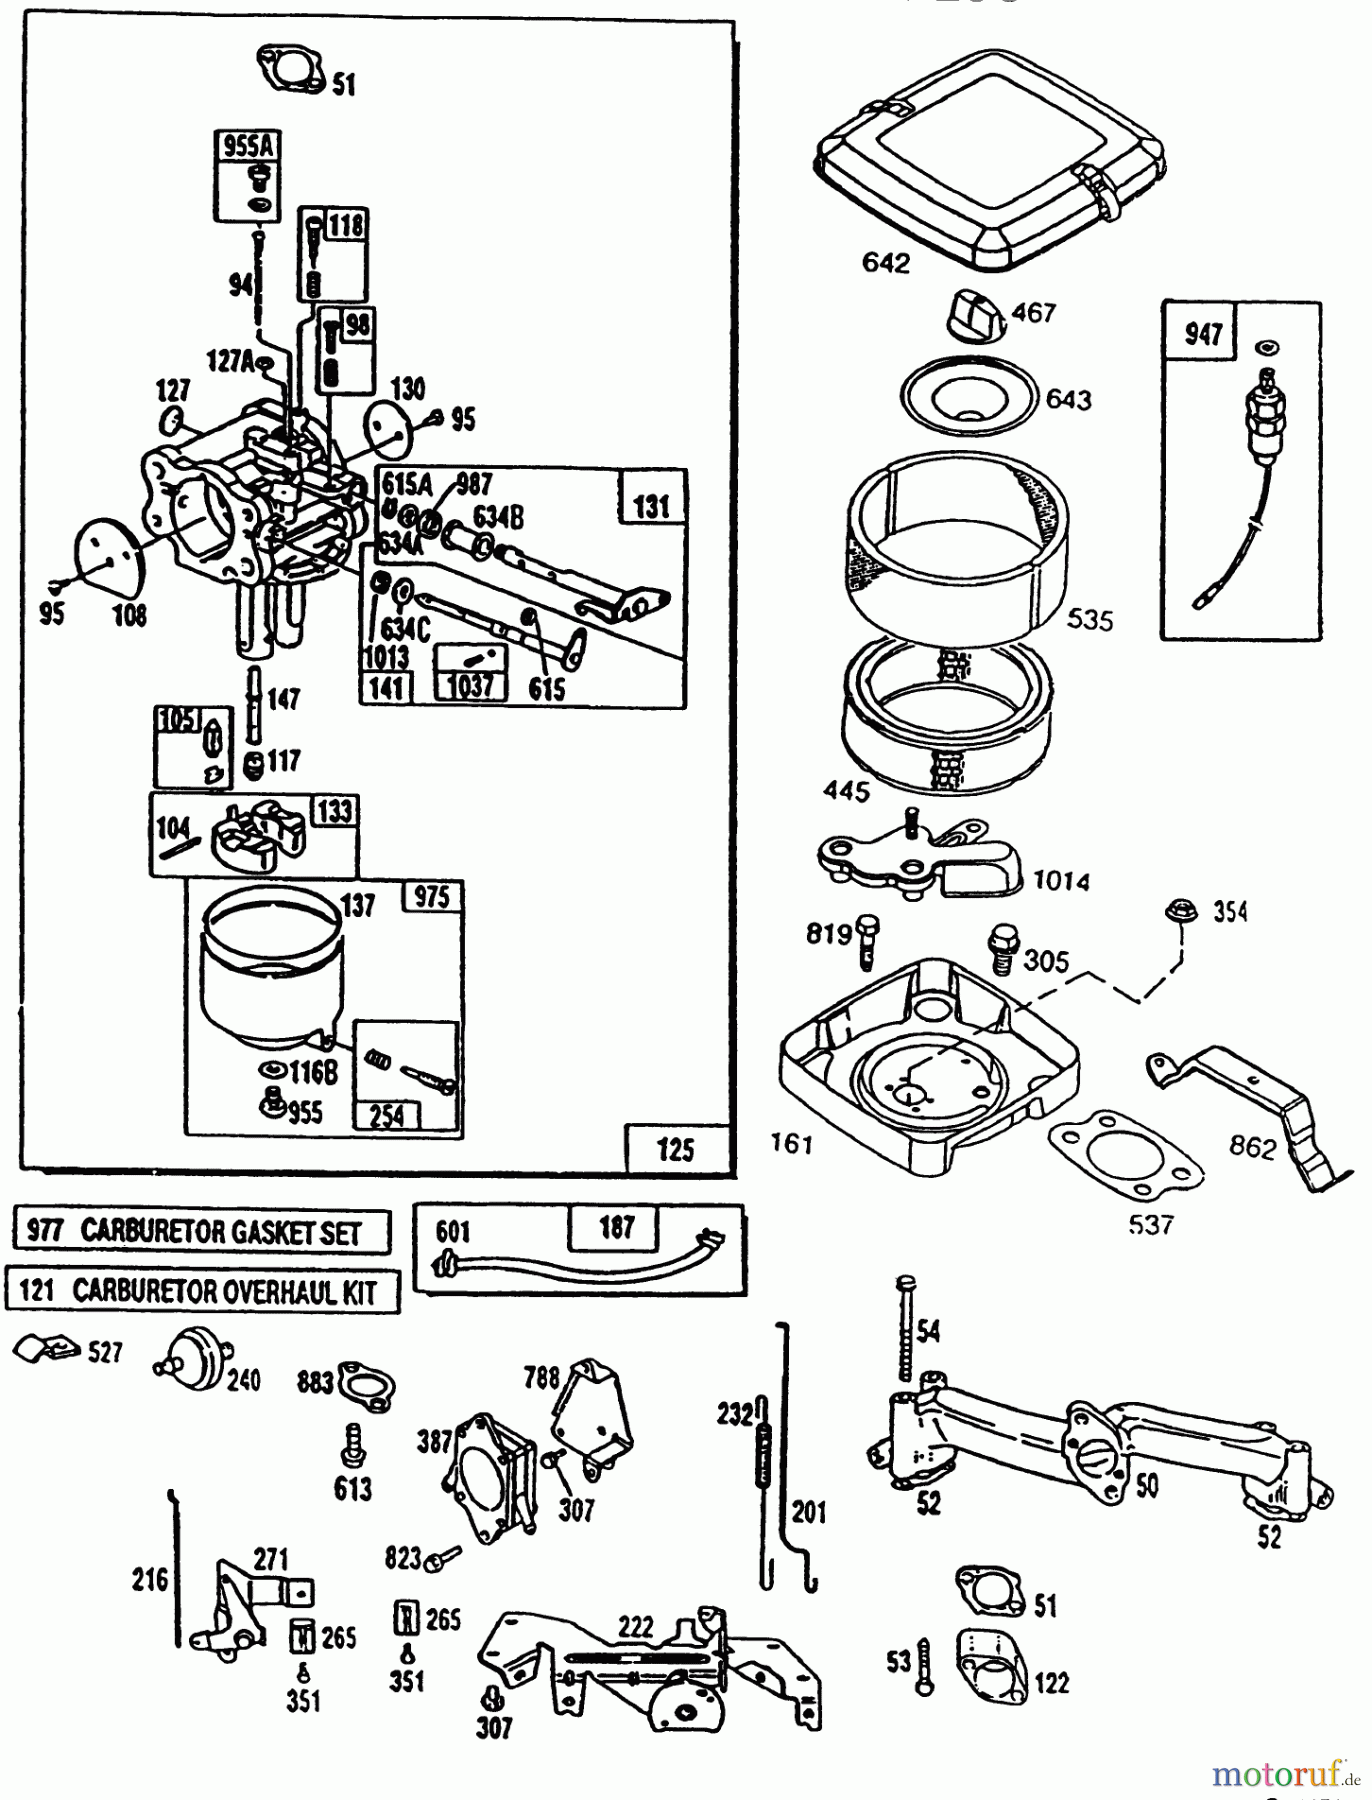  Toro Neu Mowers, Lawn & Garden Tractor Seite 1 42-16BE01 (246-H) - Toro 246-H Yard Tractor, 1992 (2000001-2999999) ENGINE TORO POWER PLUS #2